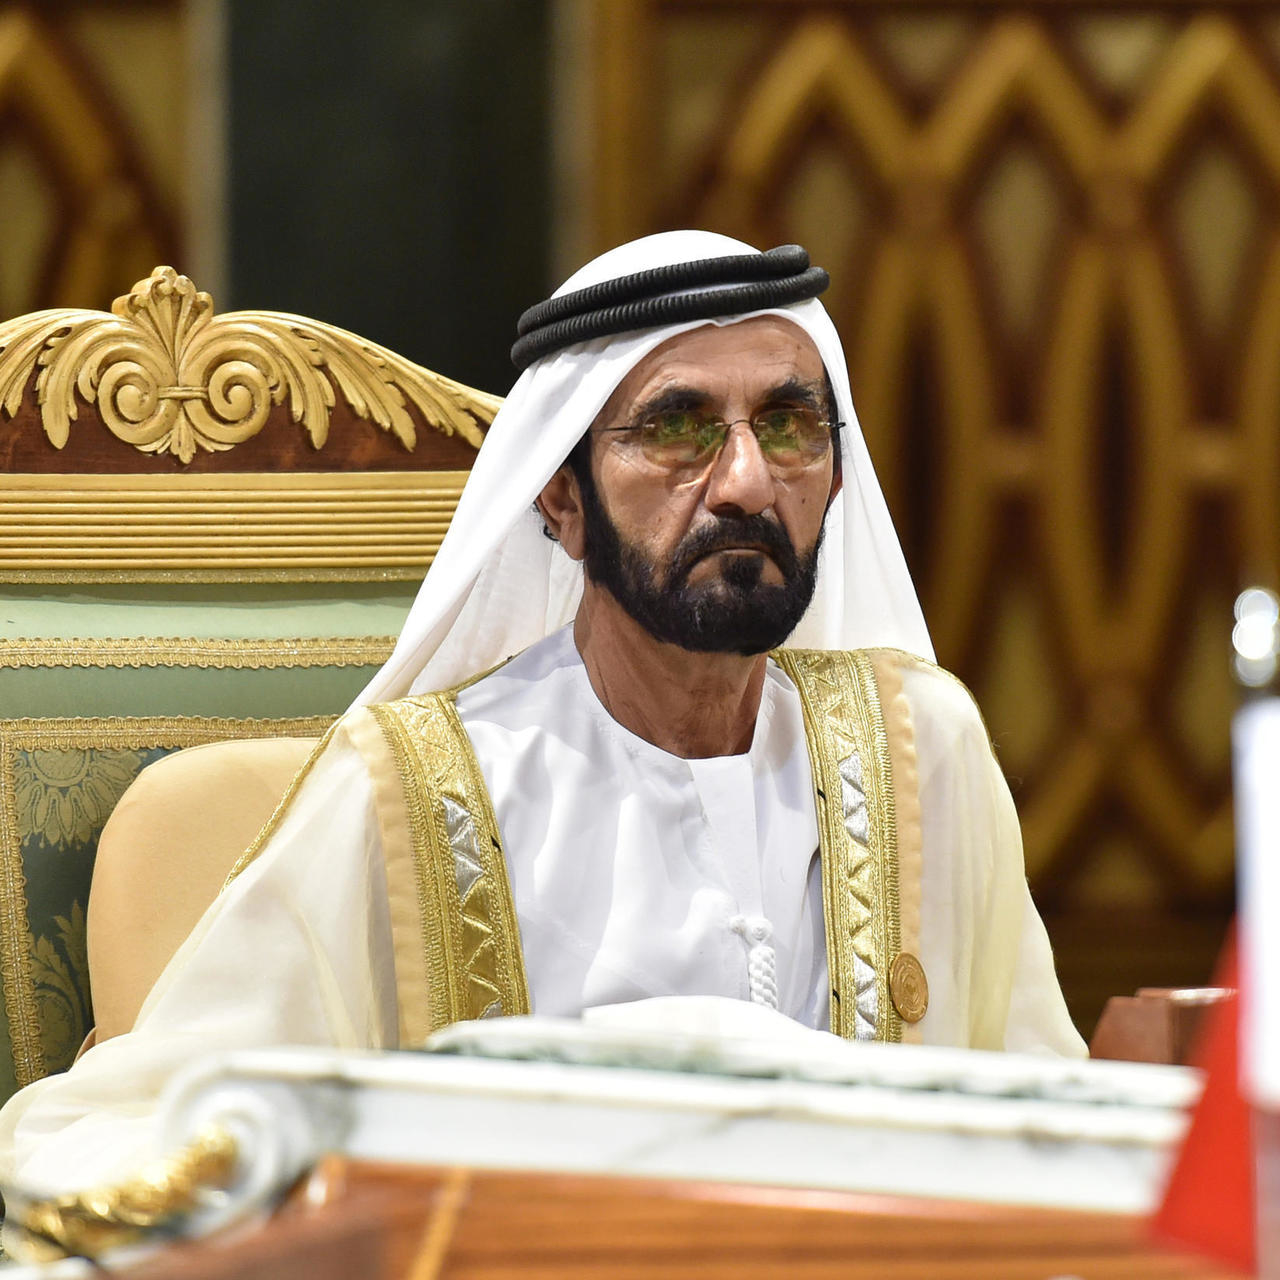 الإمارات تعلن إعادة هيكلة الحكومة وتعين وزيرين جديدين للصناعة والاقتصاد